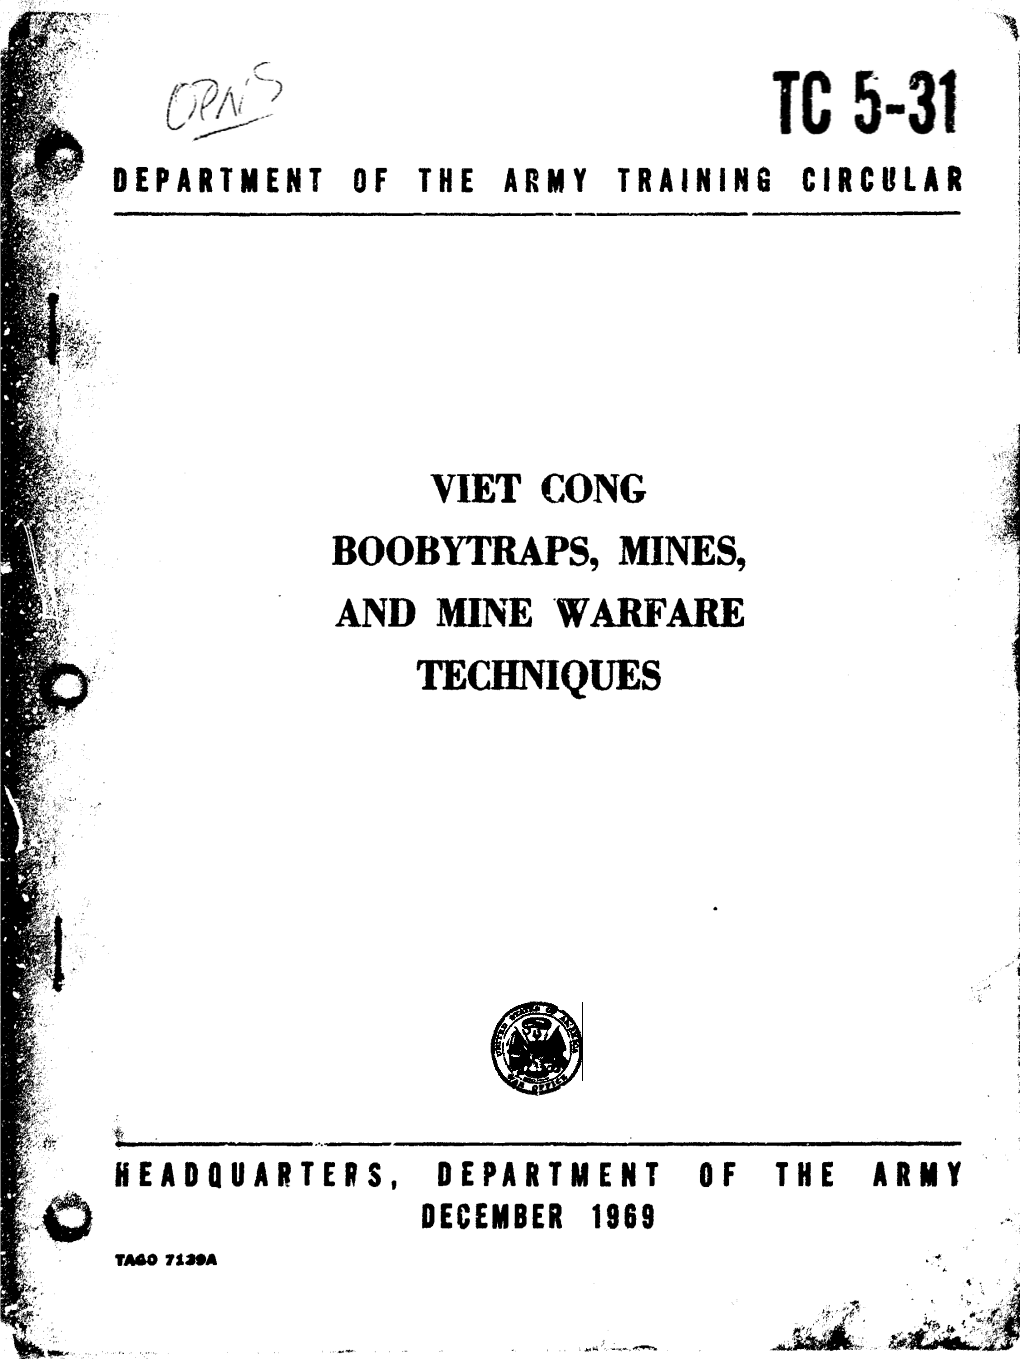 TC 5-31, Viet Cong Boobytraps, Mines, and Mine Warfare Techniques